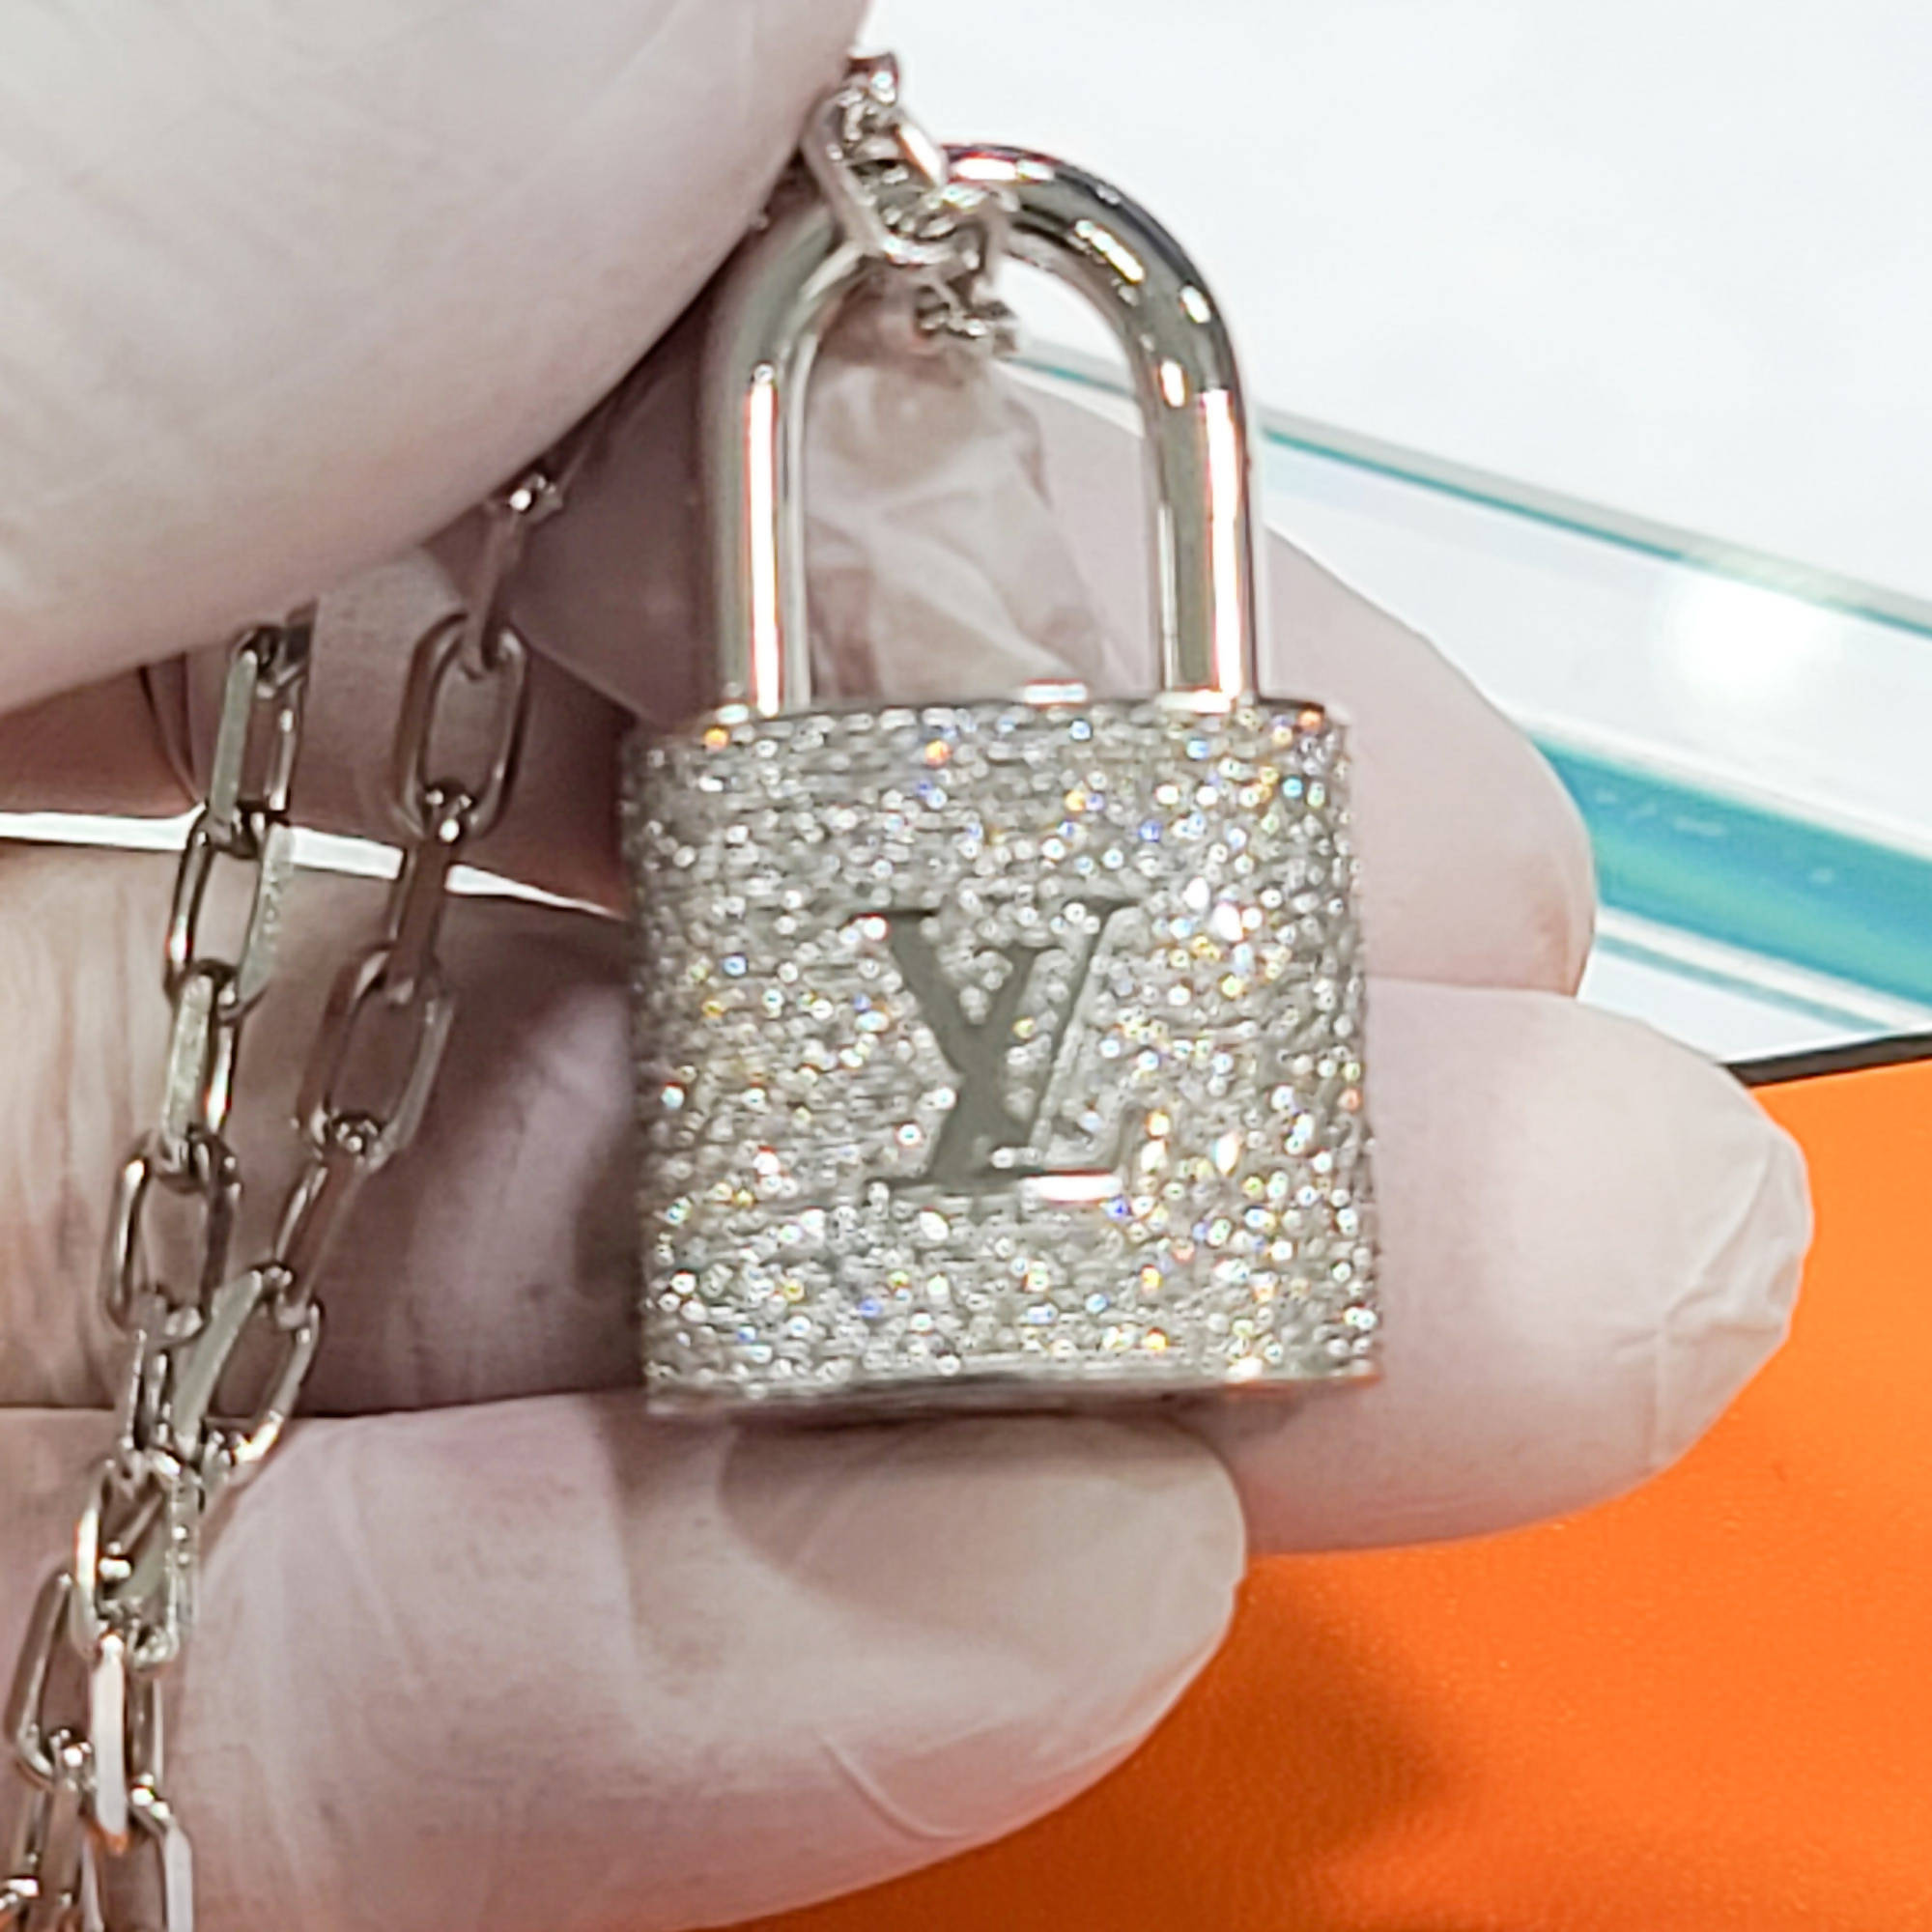 vuitton diamond lock pendant